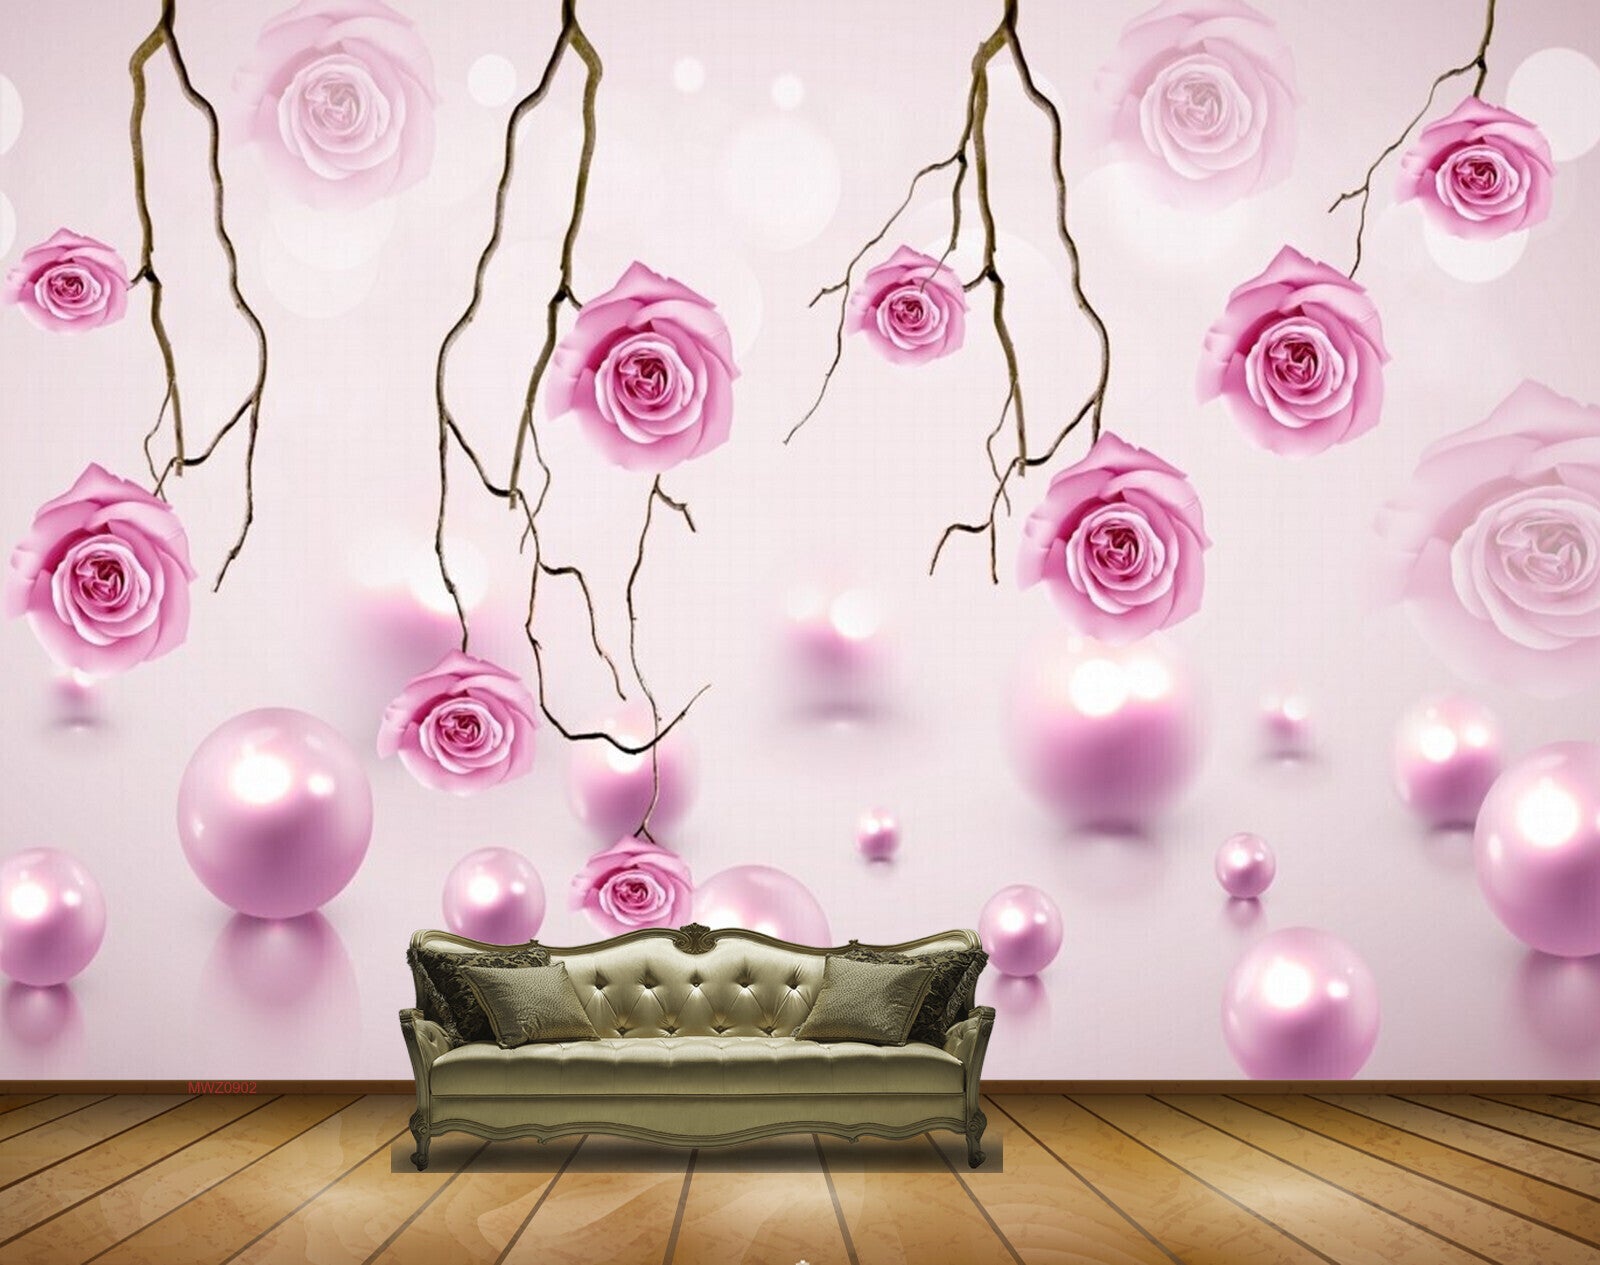 Avikalp MWZ0902 Pink Flowers Stems HD Wallpaper